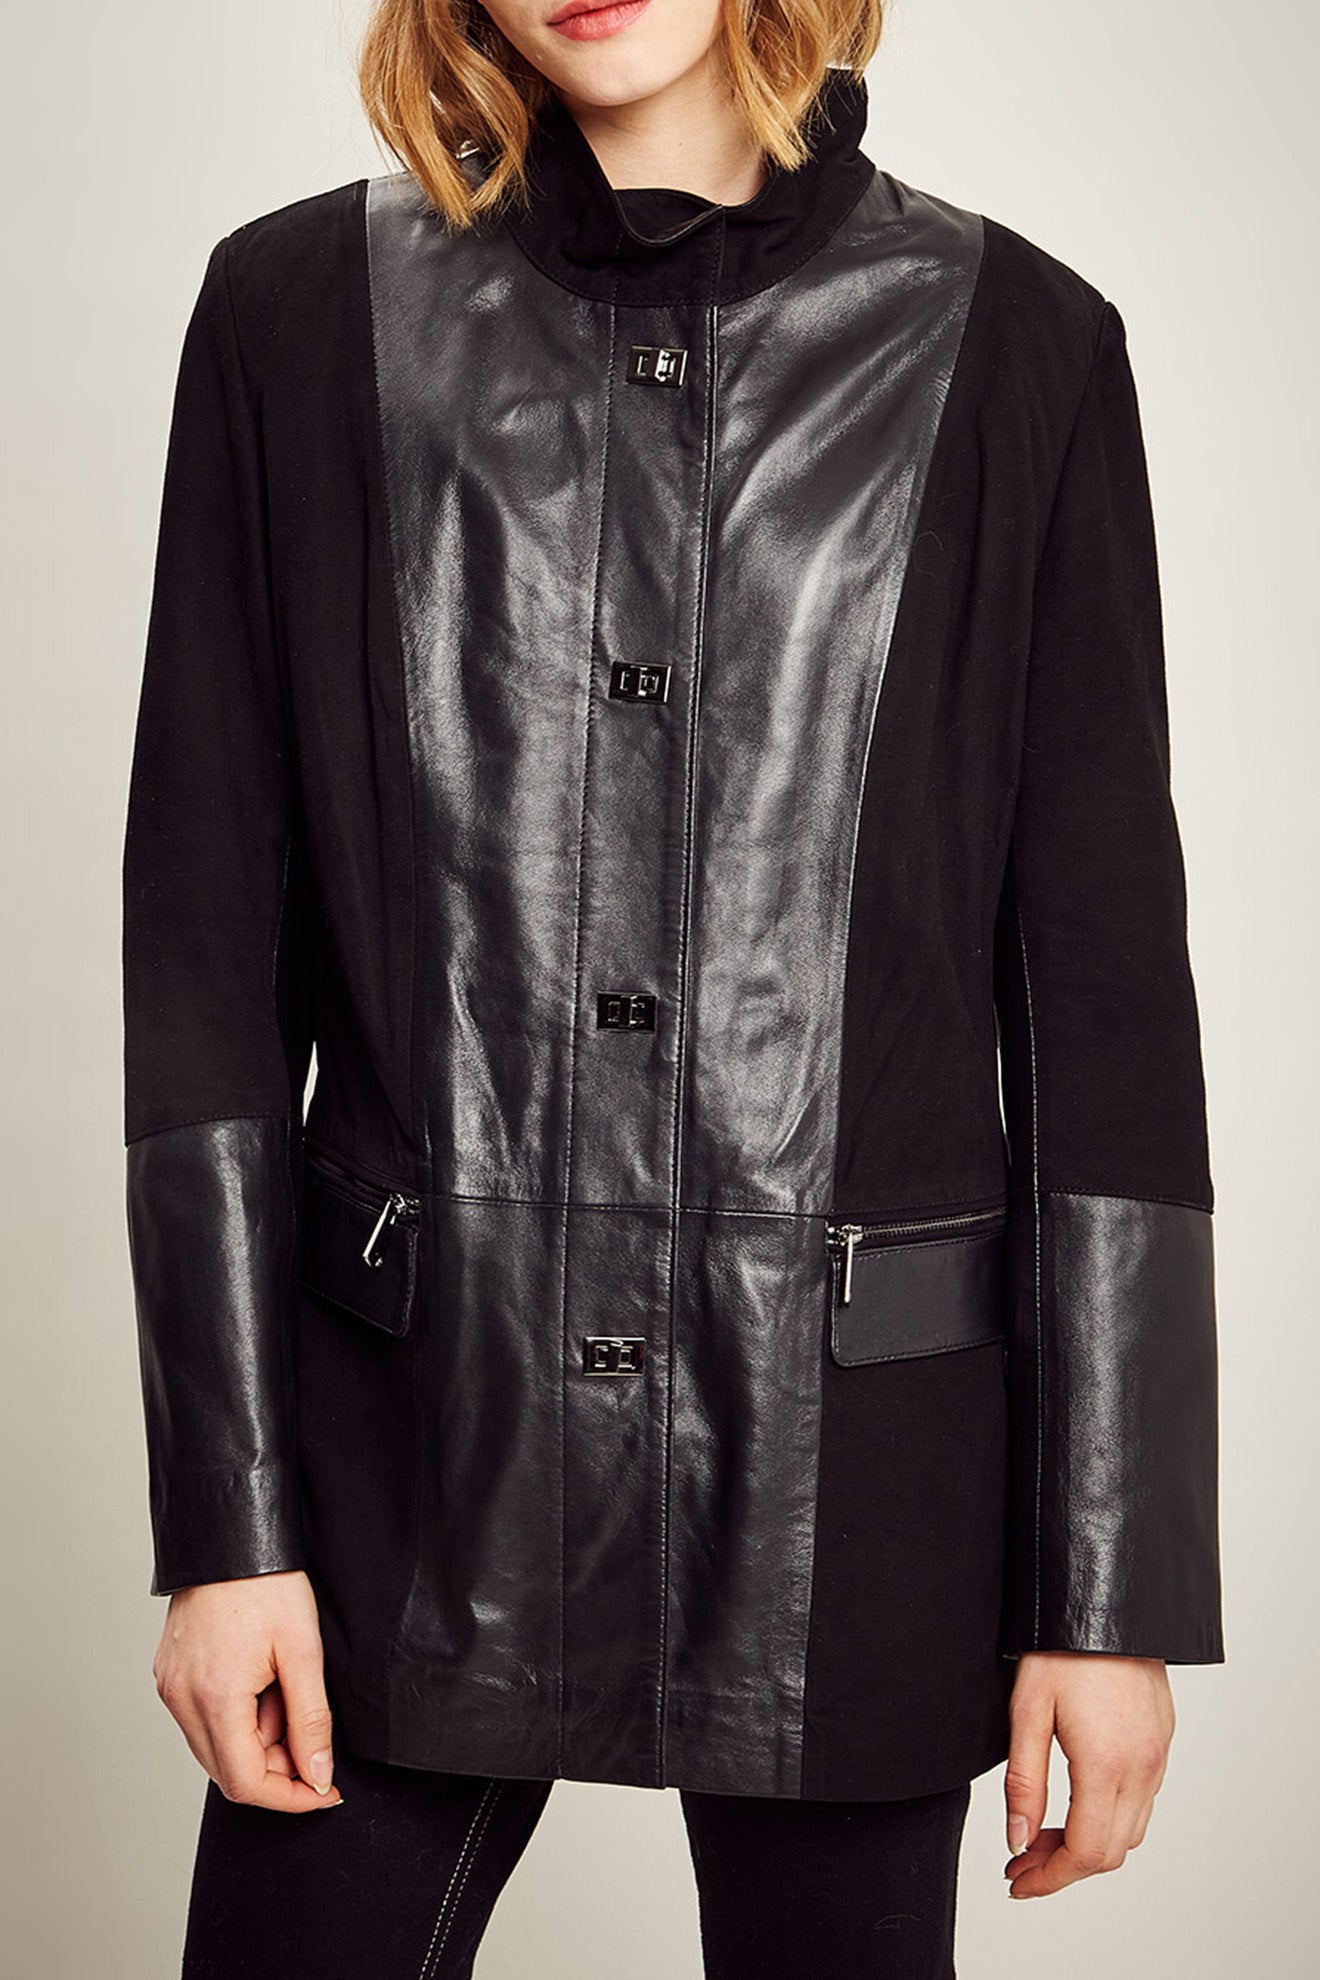 veste Emilda velours de la marque giorgio y mario en véritable cuir et daim pour femme de couleur camel noir bi-matières